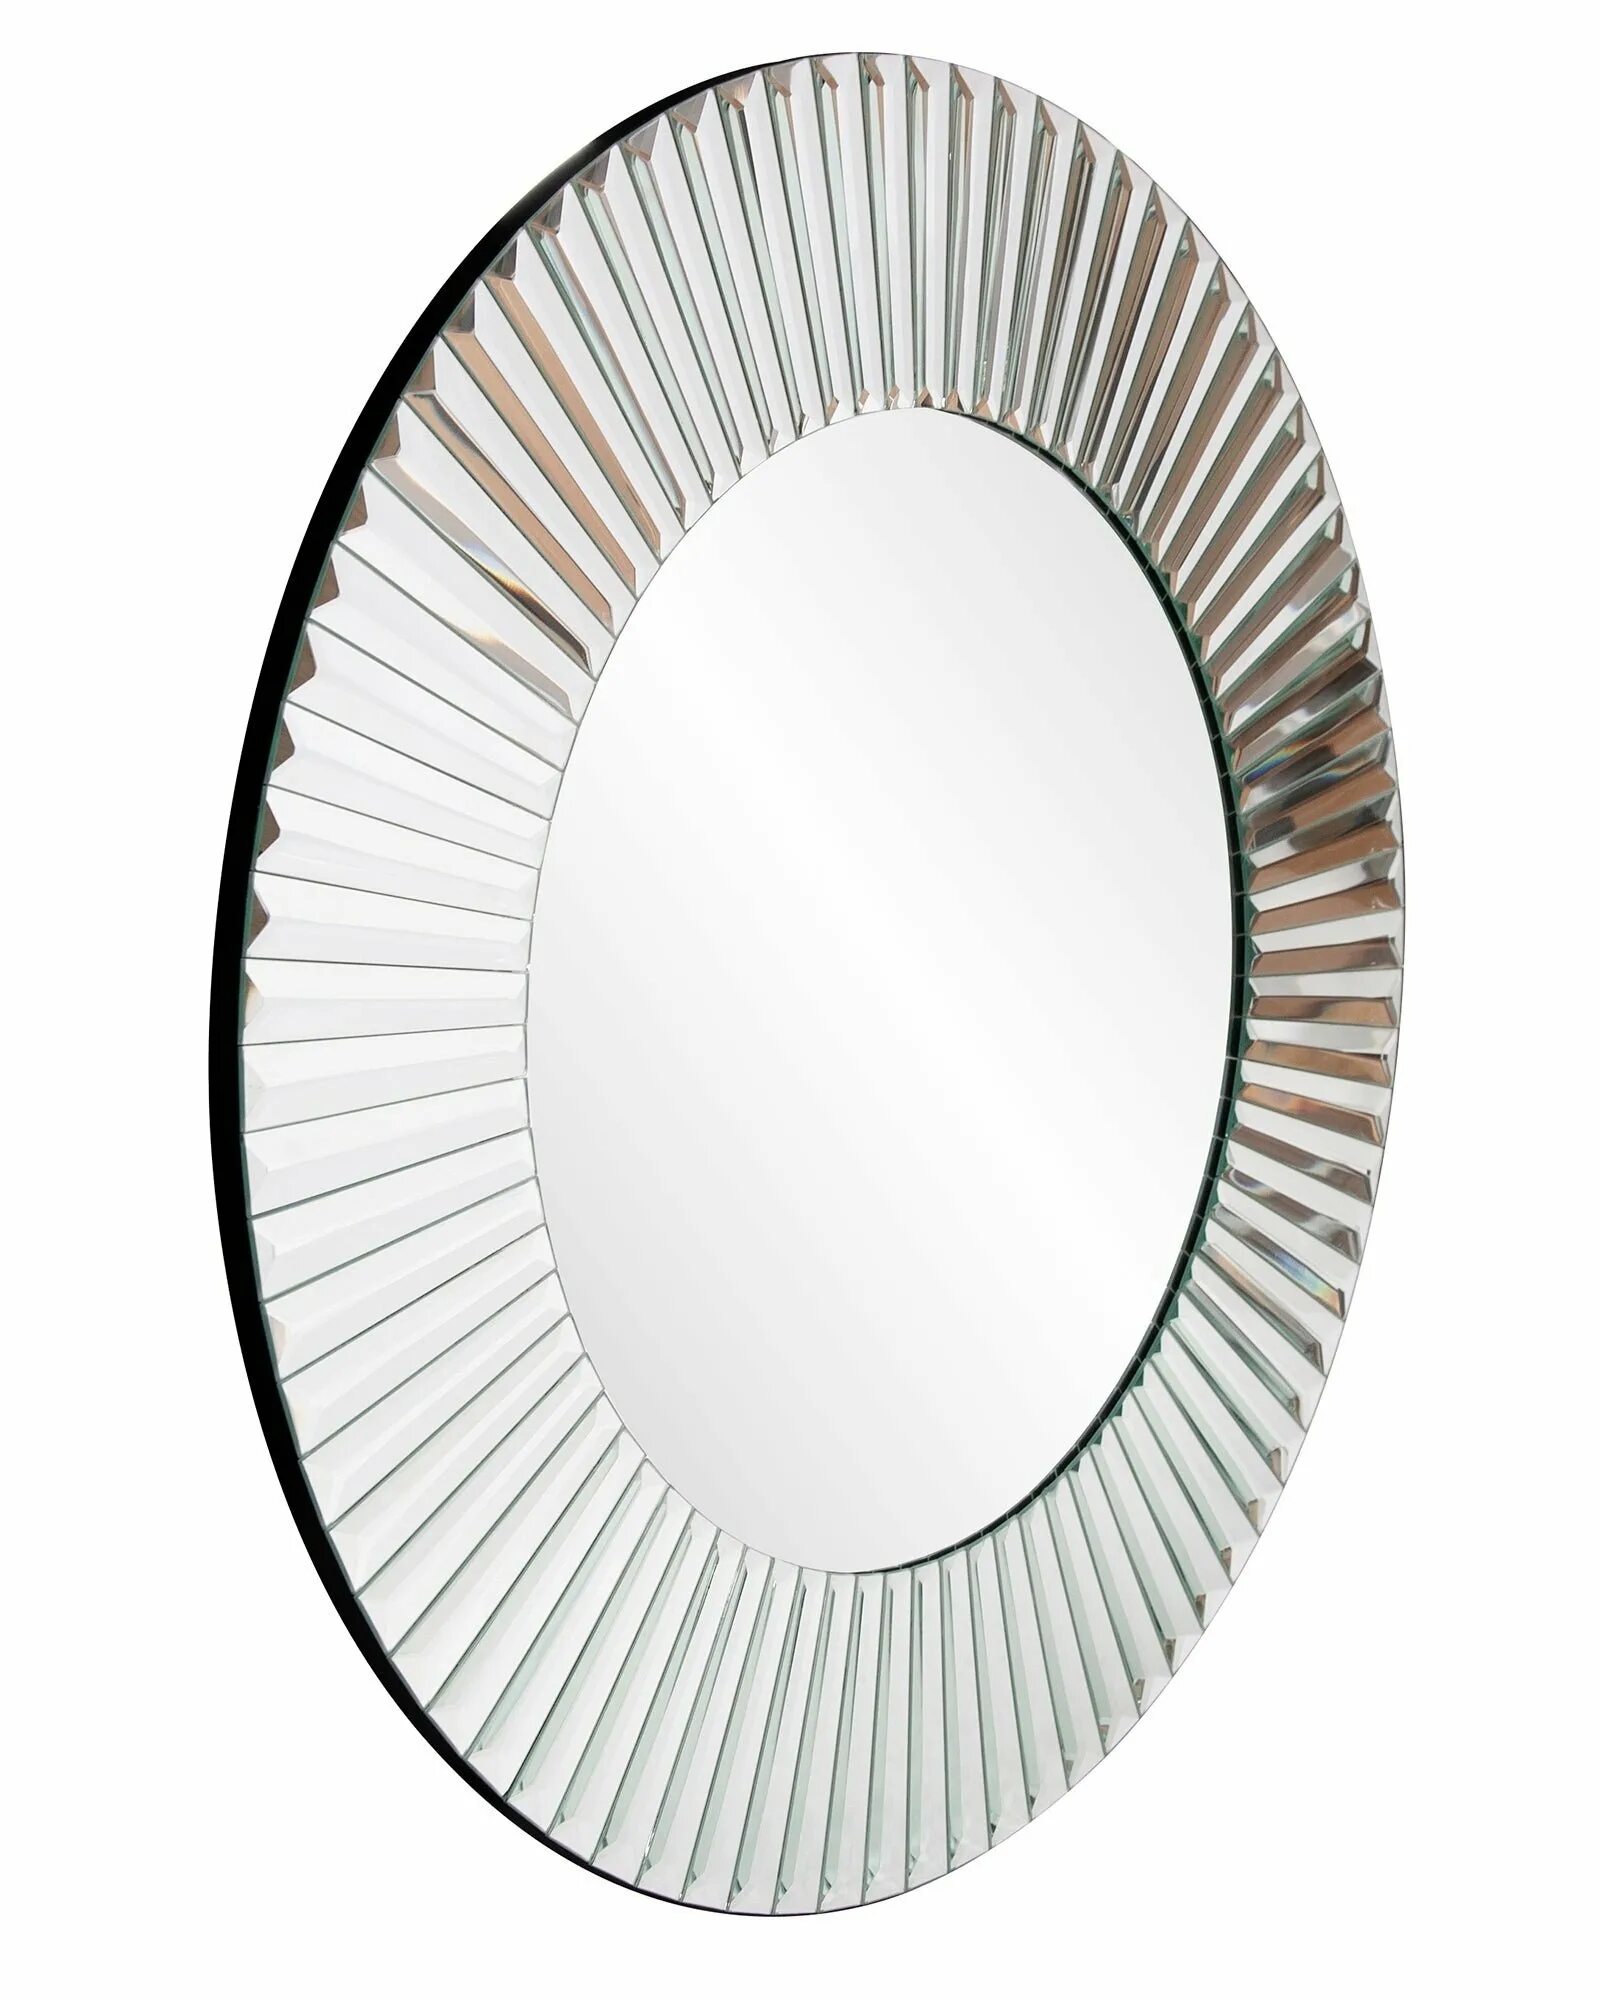 Размер настенных зеркал. 6106/L зеркало круглое поворотное настенное. Зеркало LH Mirror Home Льюис bd-136079.